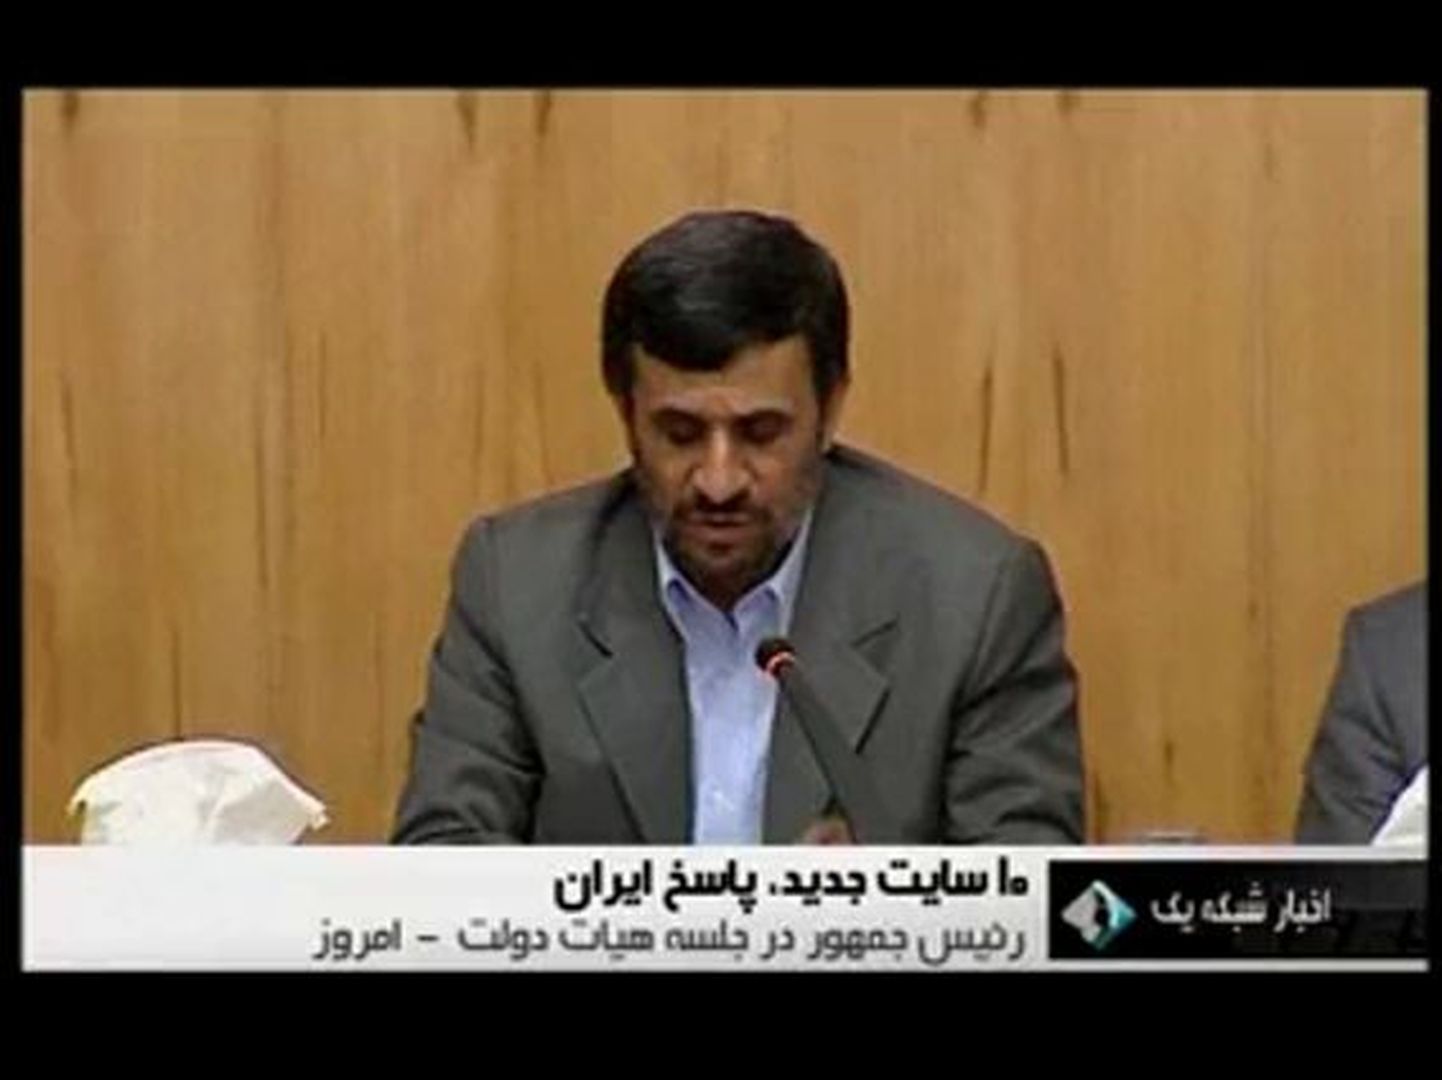 В этот же день президент Ахмадинежад выступил с лекцией, которую транслировали в прямом телеэфире, но о попытке покушения не сказал ни слова.